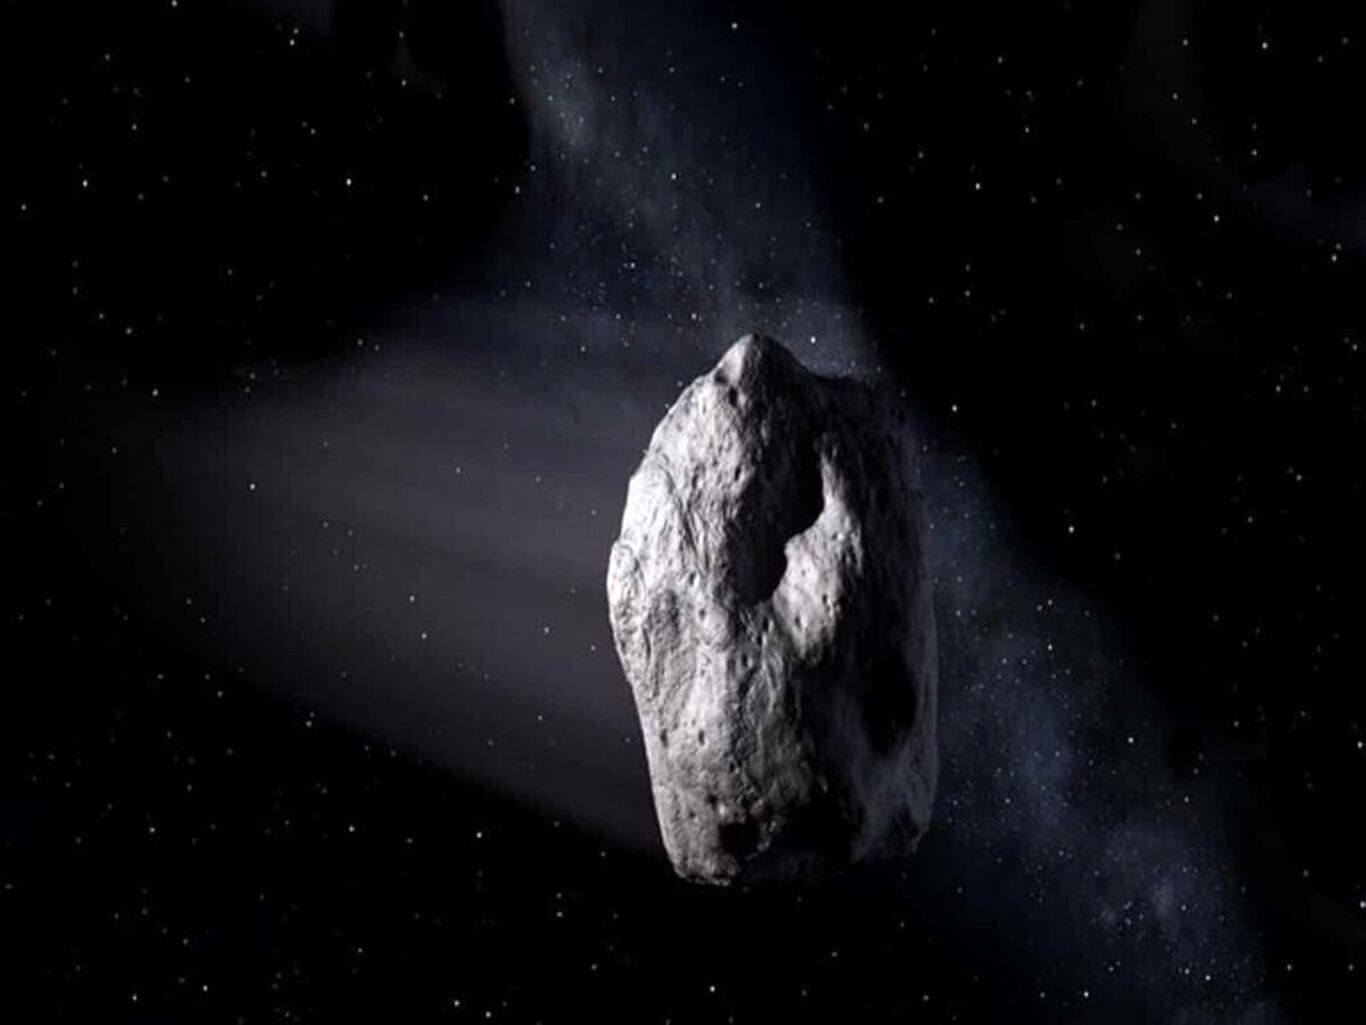 جیمز وب یک سیارک حدودا ۲۰۰ متری شکار کرد!